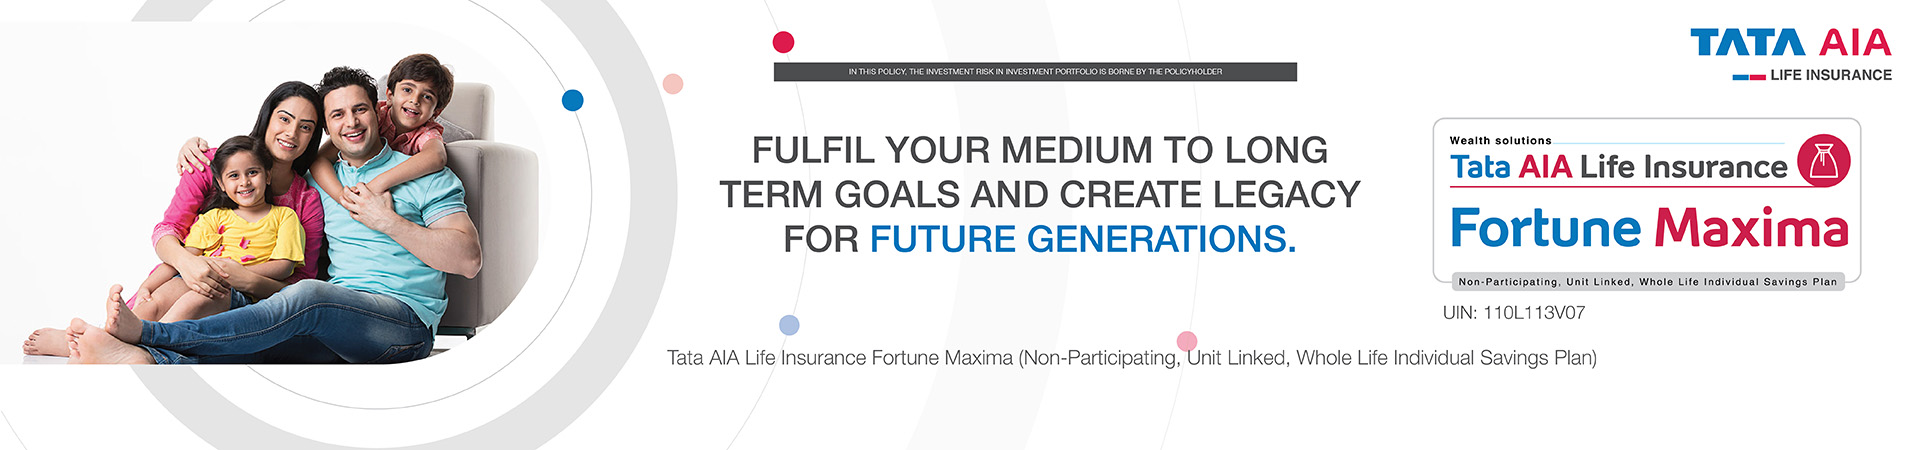  Tata AIA Life Insurance Fortune Maxima